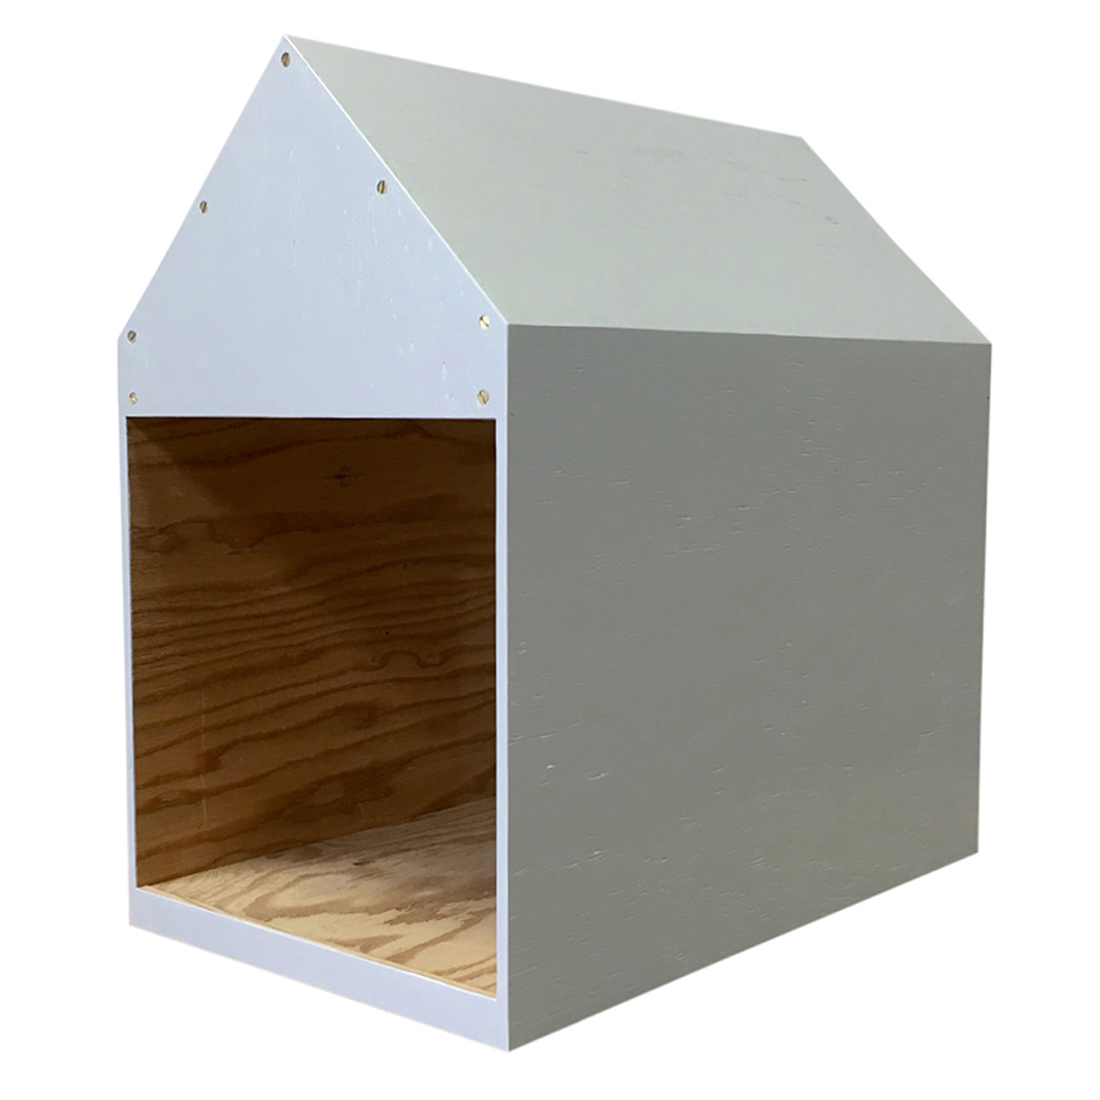 インテリアになる犬小屋 ドッグハウス ペットハウス 木製 グレー 室内用 Iichi ハンドメイド クラフト作品 手仕事品の通販